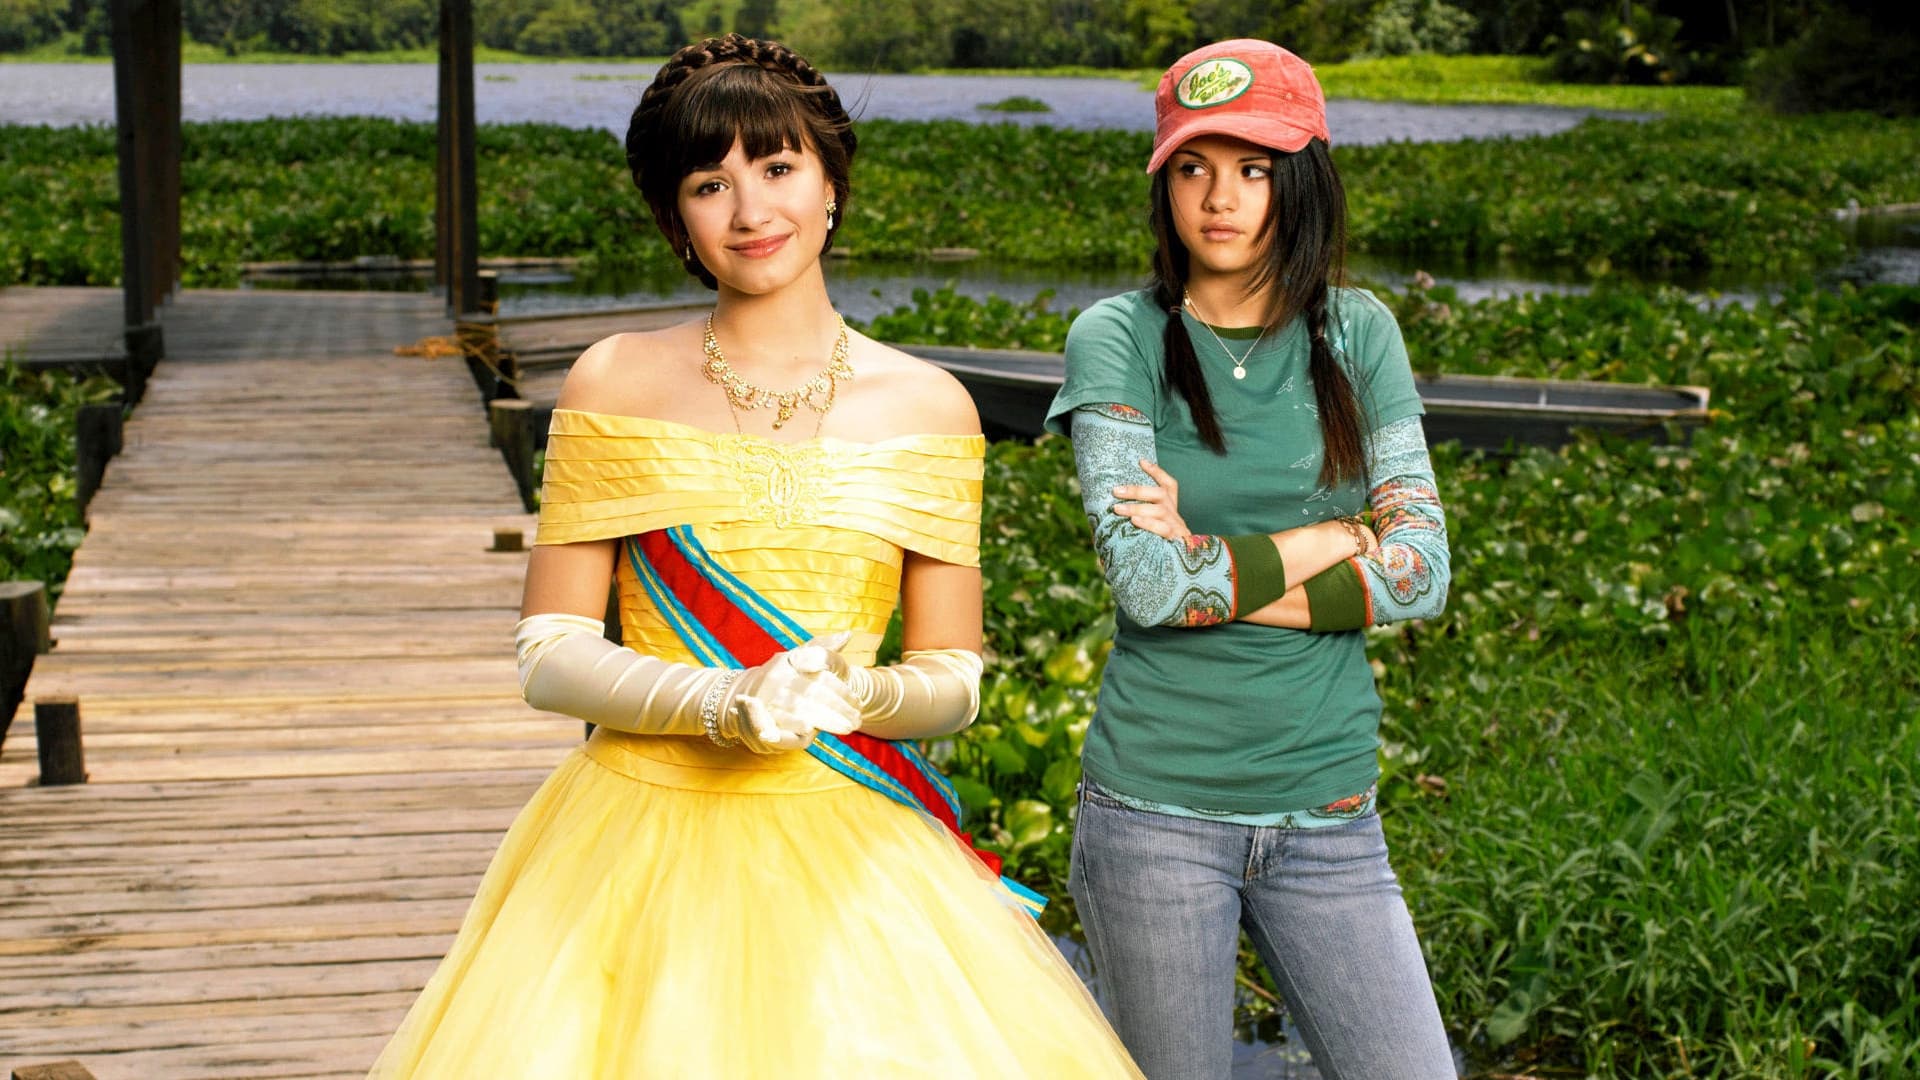 Carter e la principessa Rosalinda nel film di Disney Channel "Programma protezione principesse" (2009)